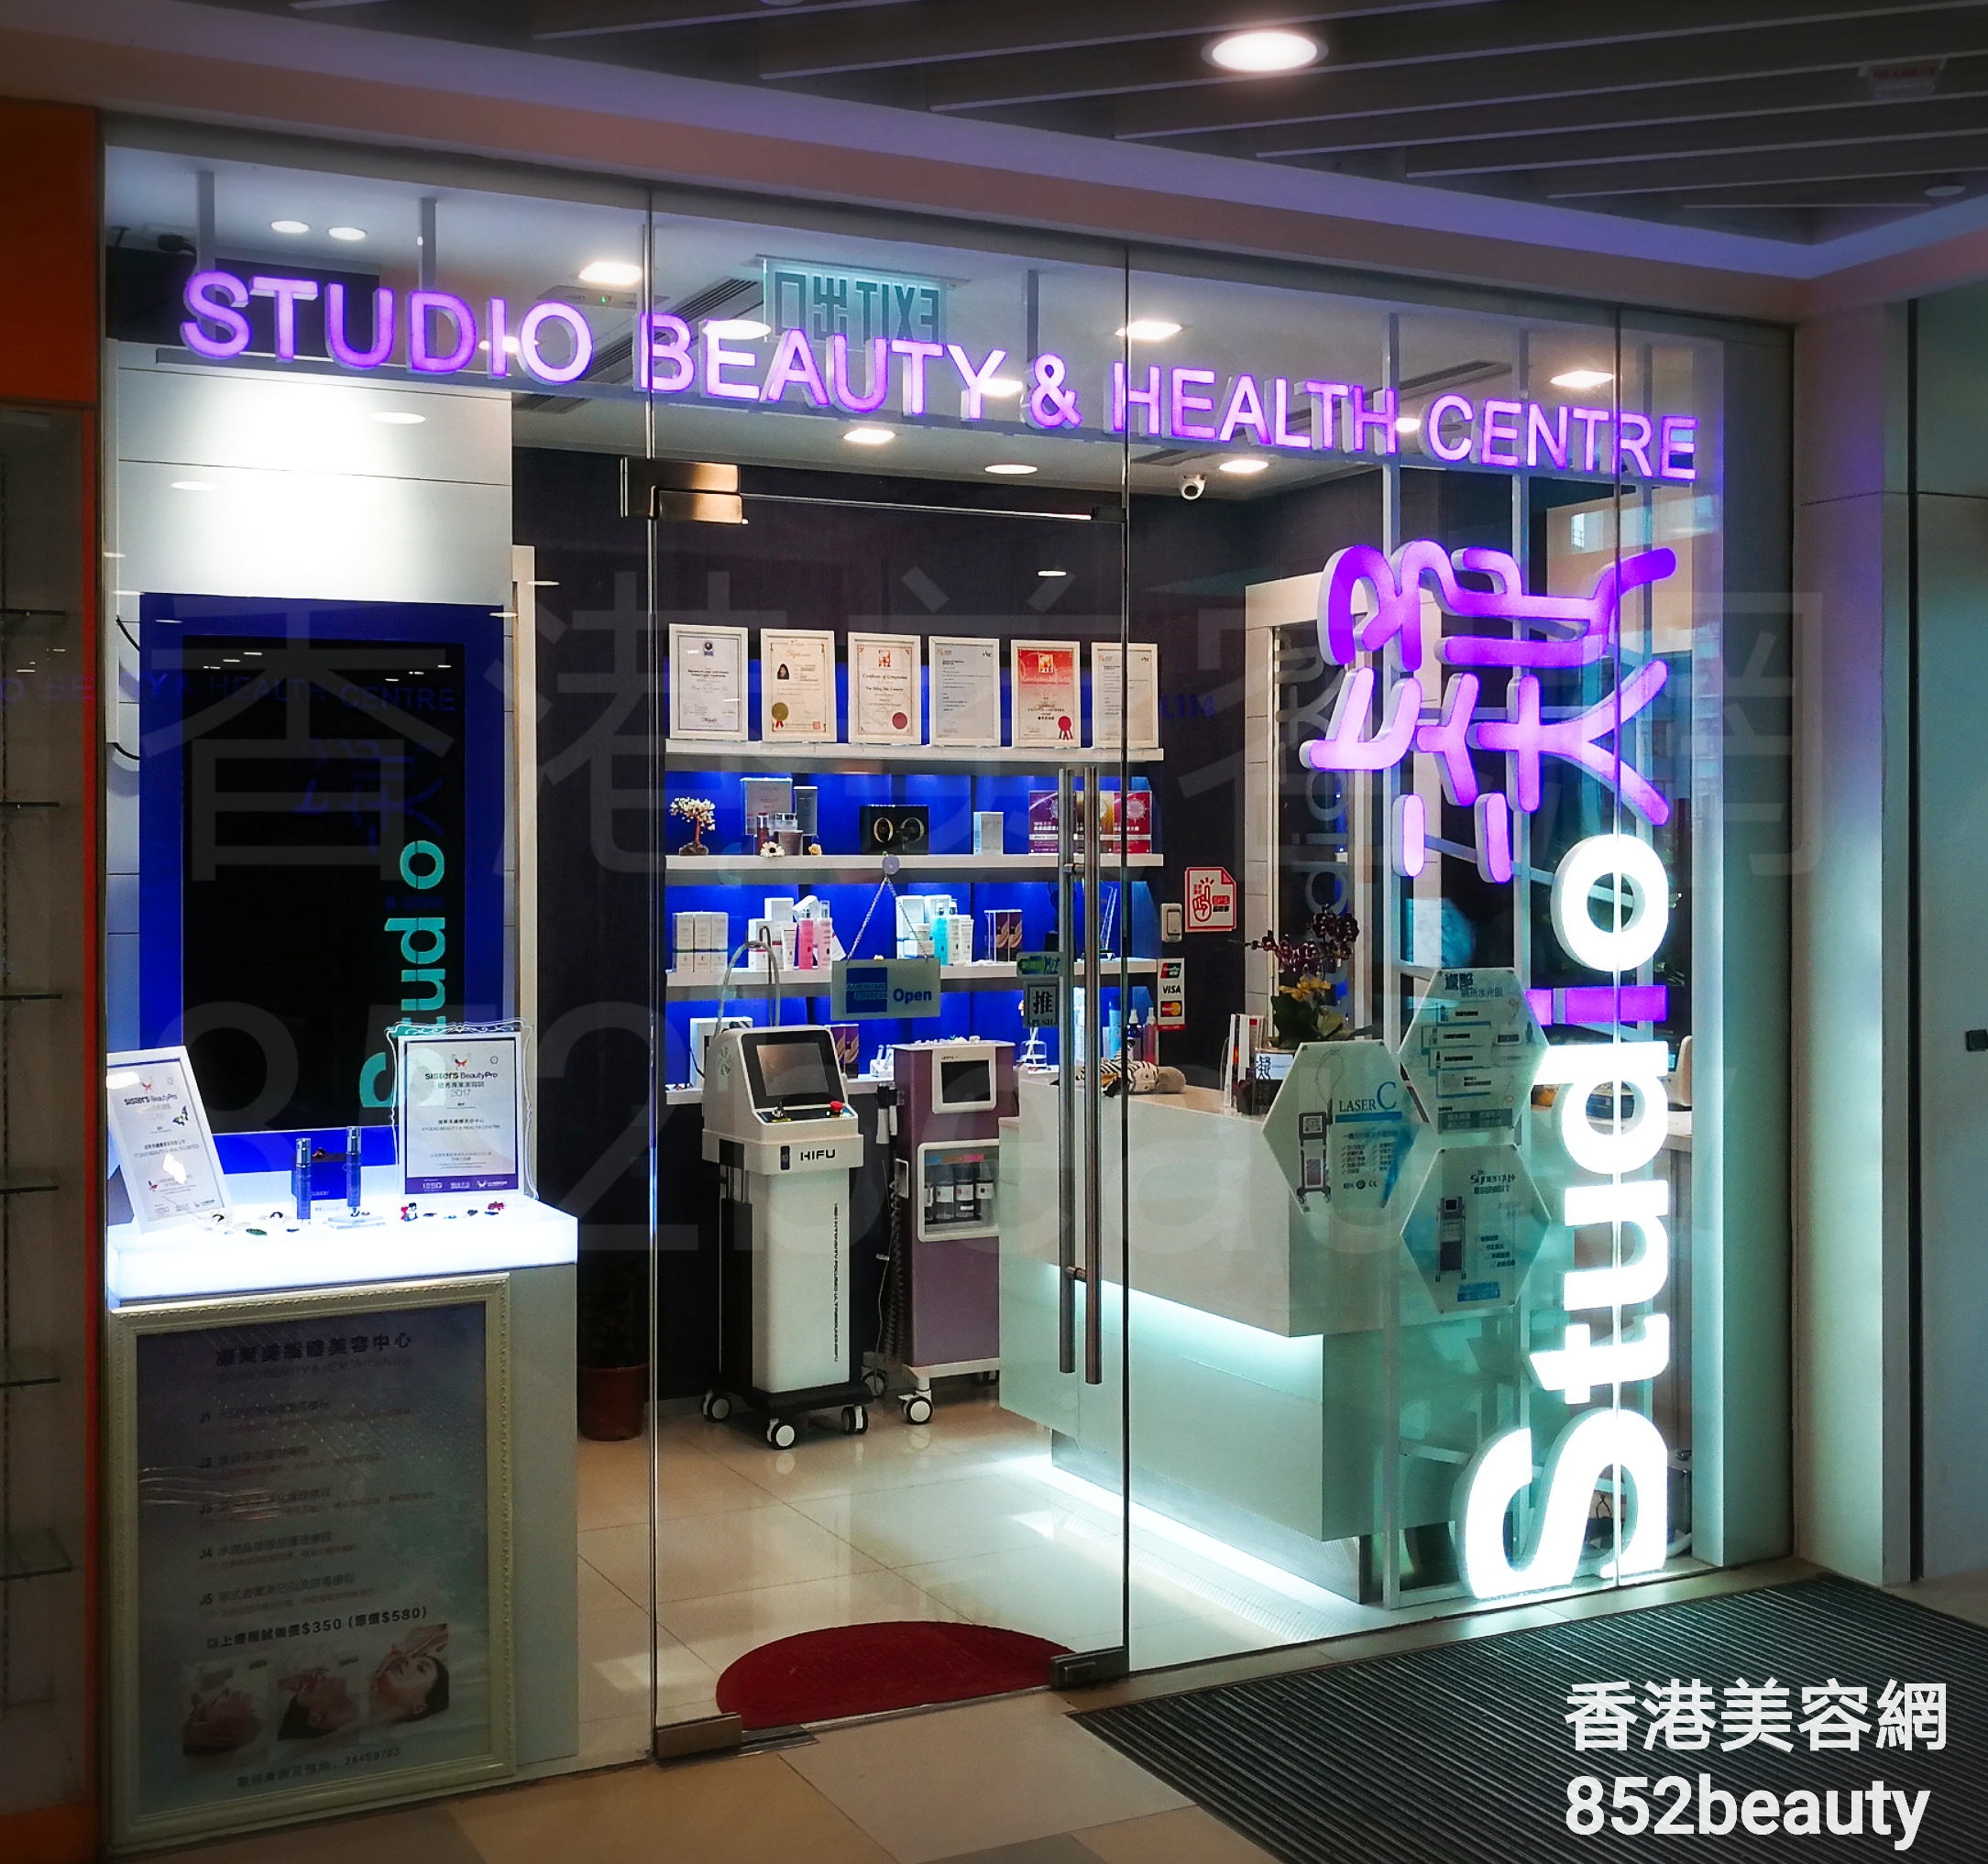 美容院 Beauty Salon: STUDIO BEAUTY & HEALTH CENTRE 凝聚美纖體美容中心 (天盛店)